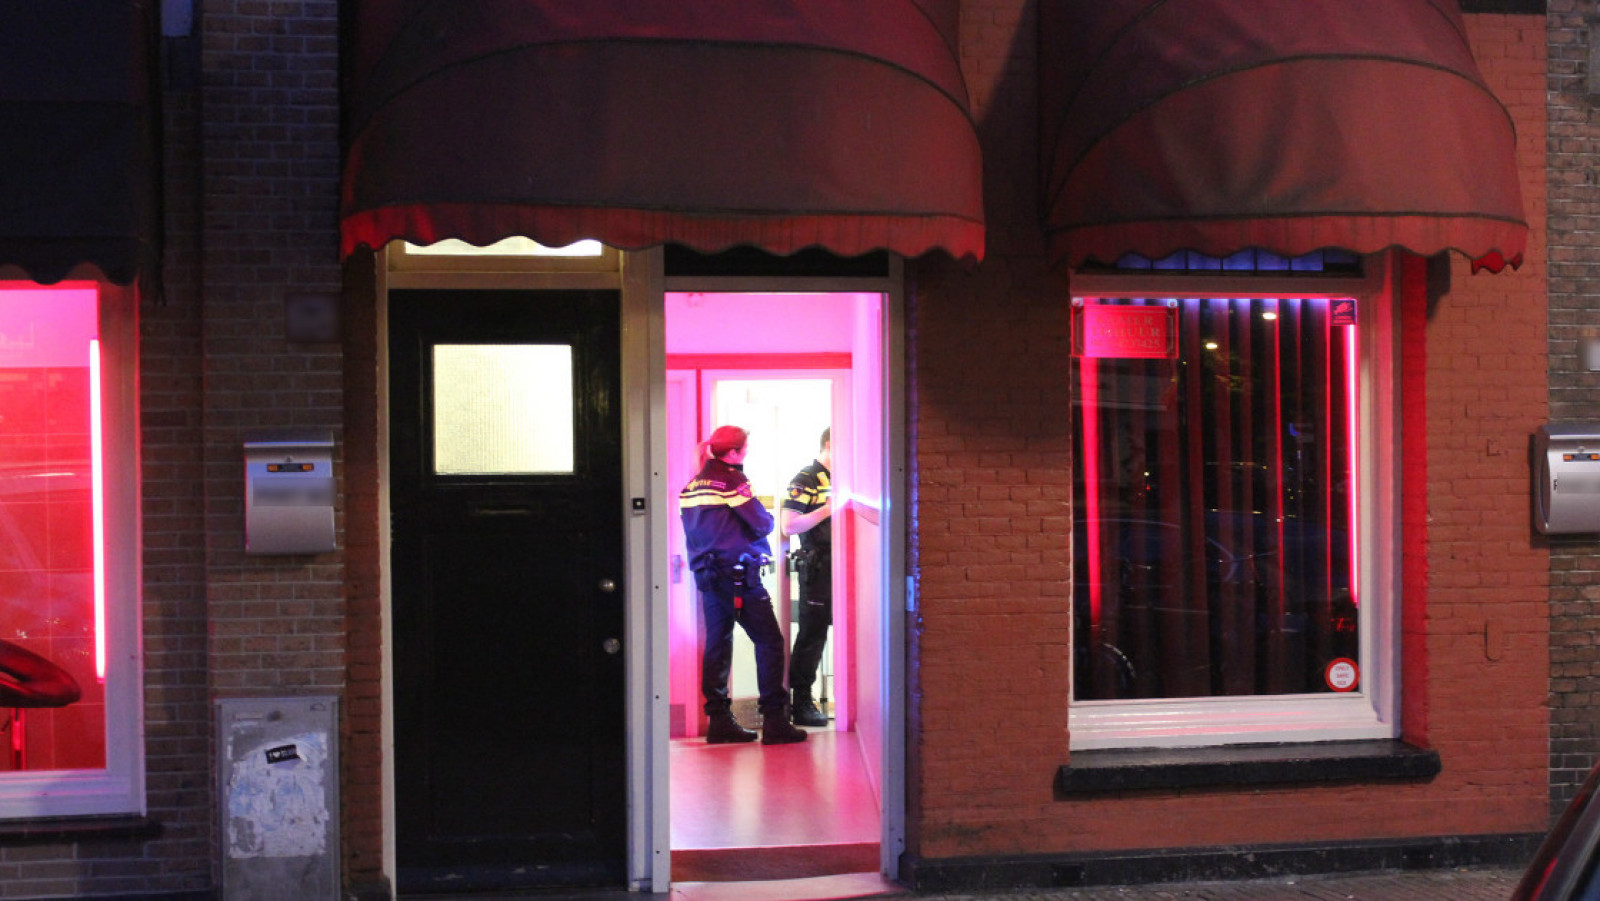 Amsterdamse Prostituee Gewelddadig Beroofd In Haar Peeskamer Nh Nieuws 